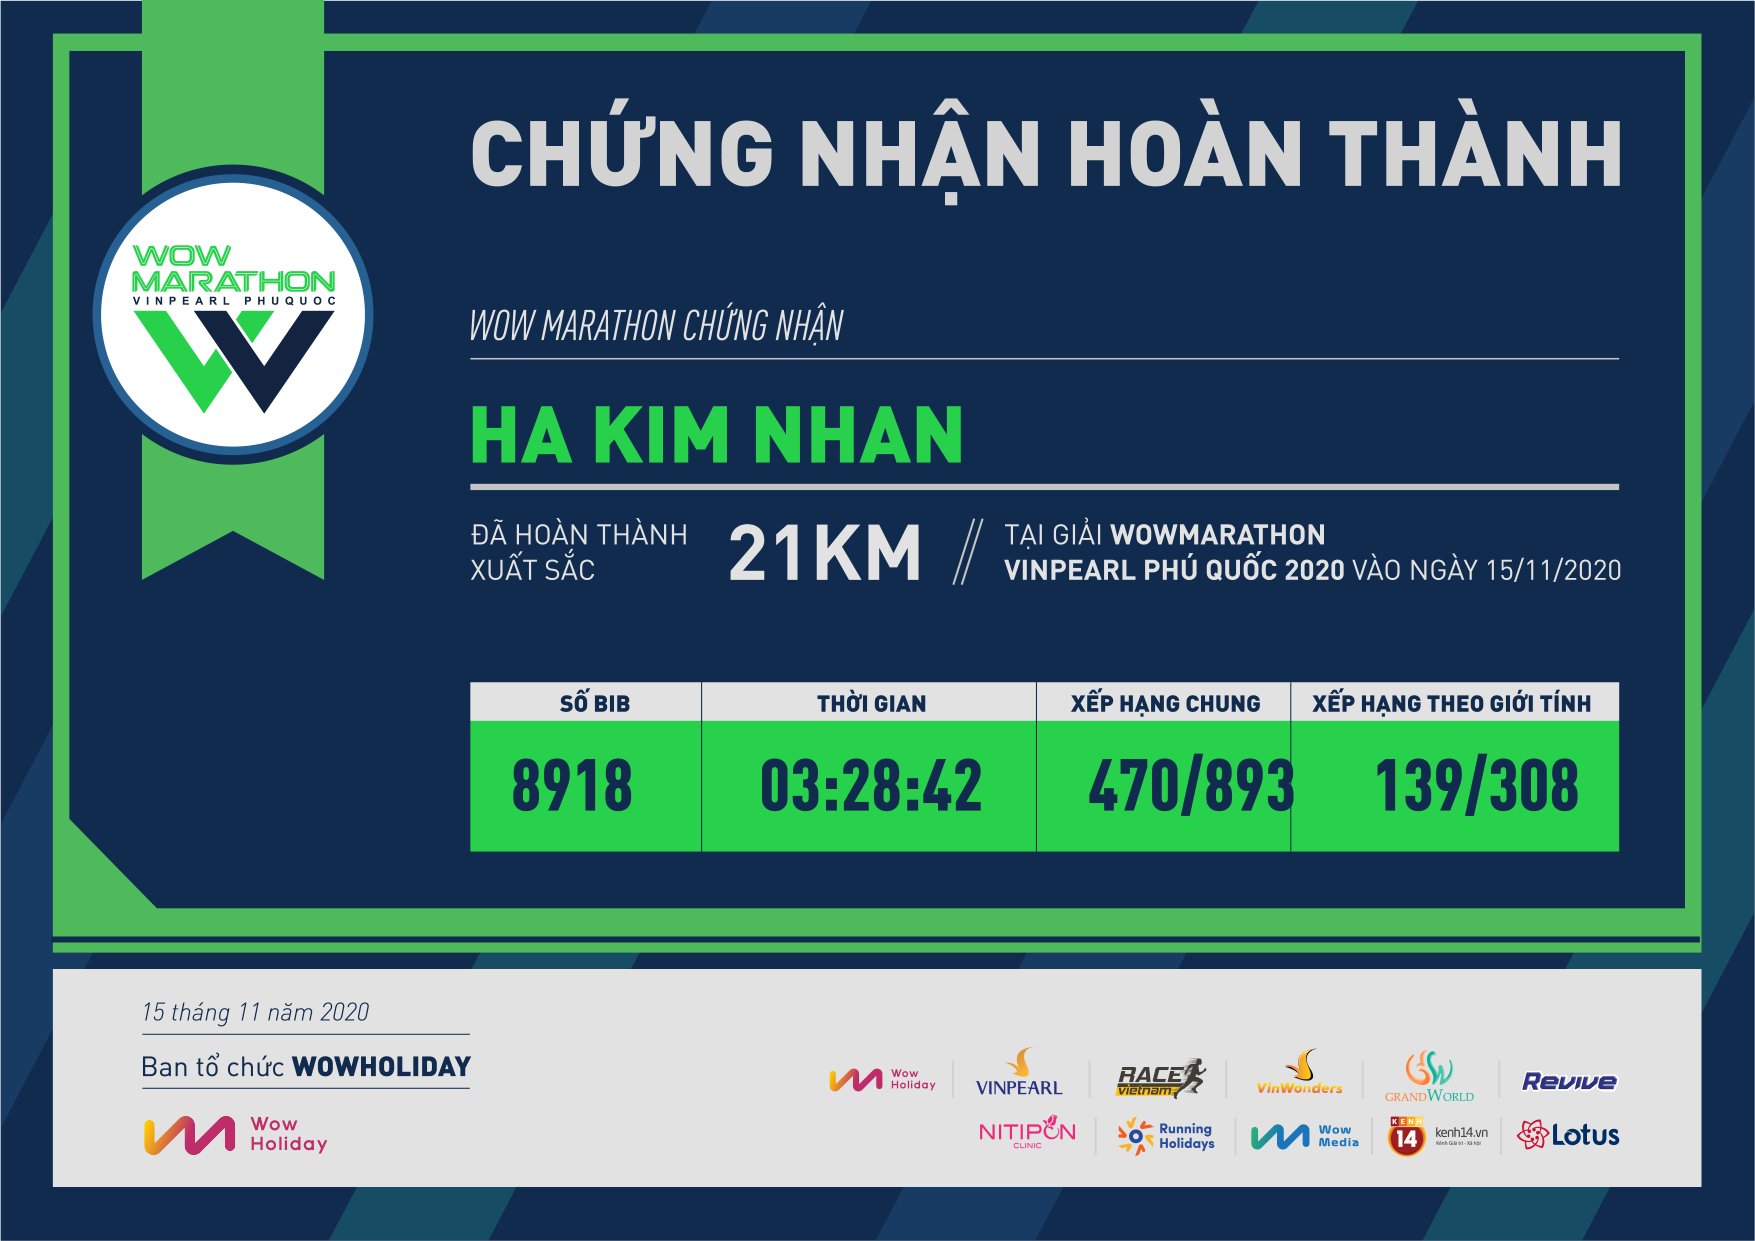 8918 - Ha Kim Nhan